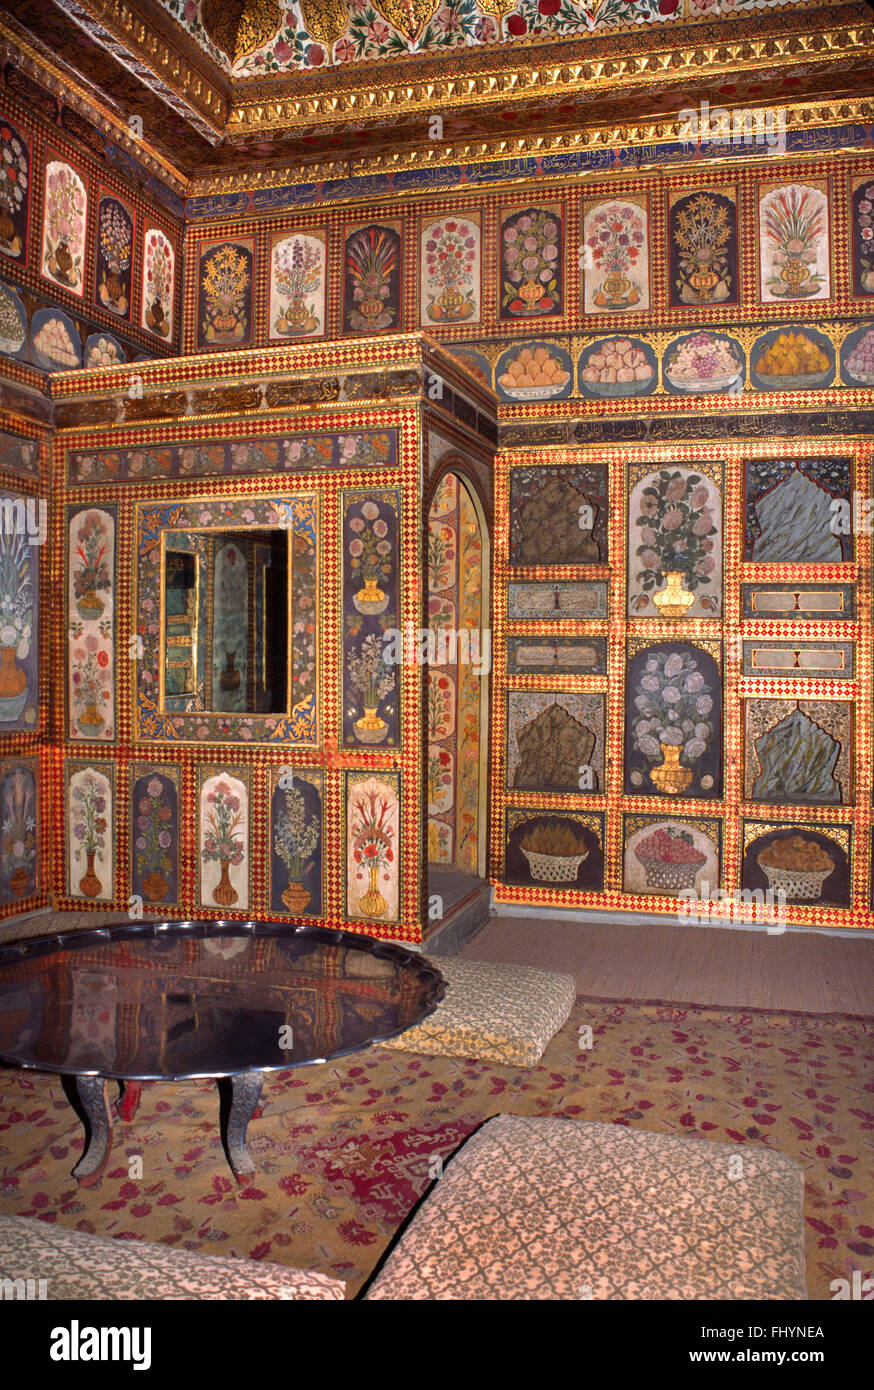 Eine wunderschön bemalte, gefliest und dekorierte Wohnzimmer von The Harem - Topkapi-Palast (Osmanisches Reich), Istanbul Stockfoto